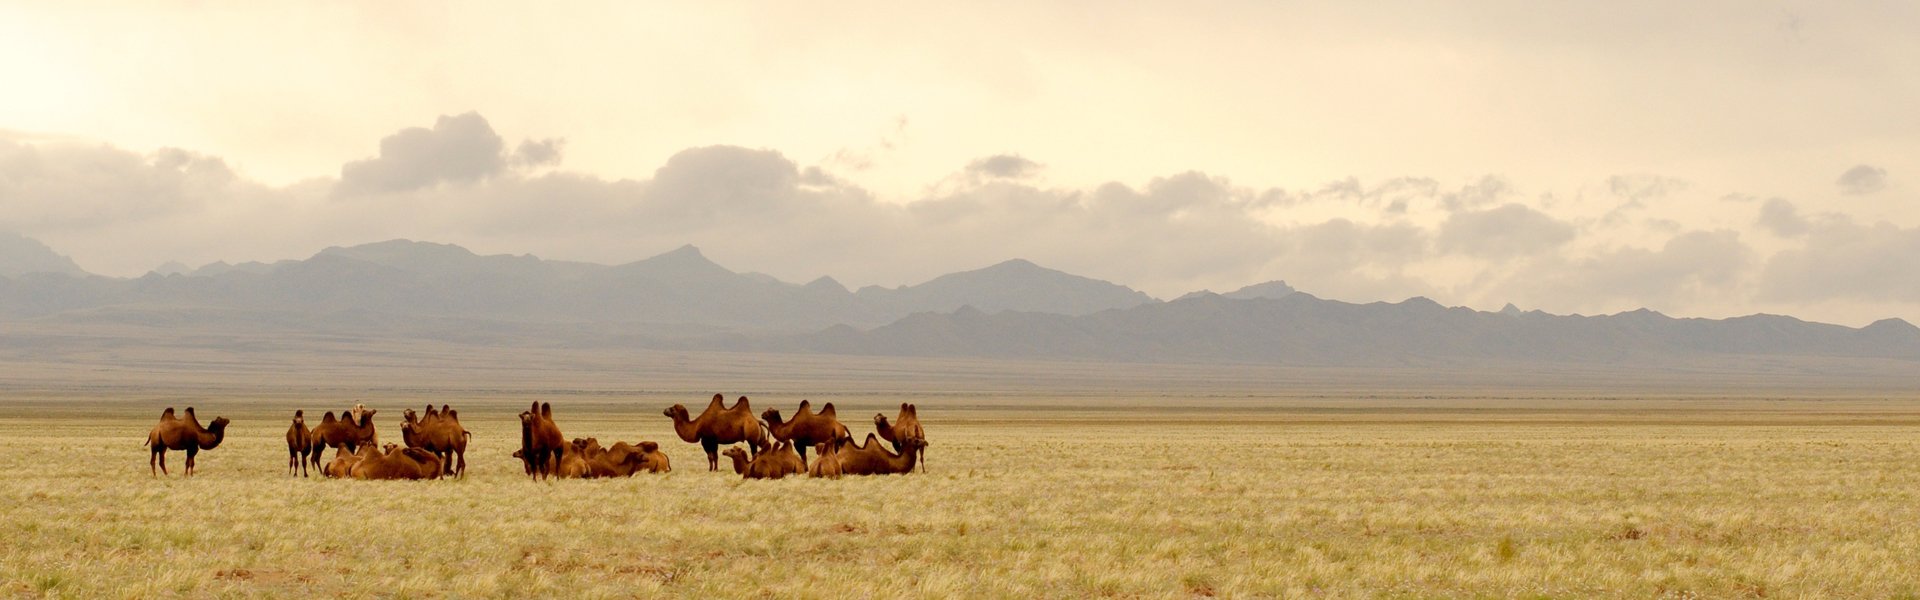 Gobiwoestijn, Mongolië